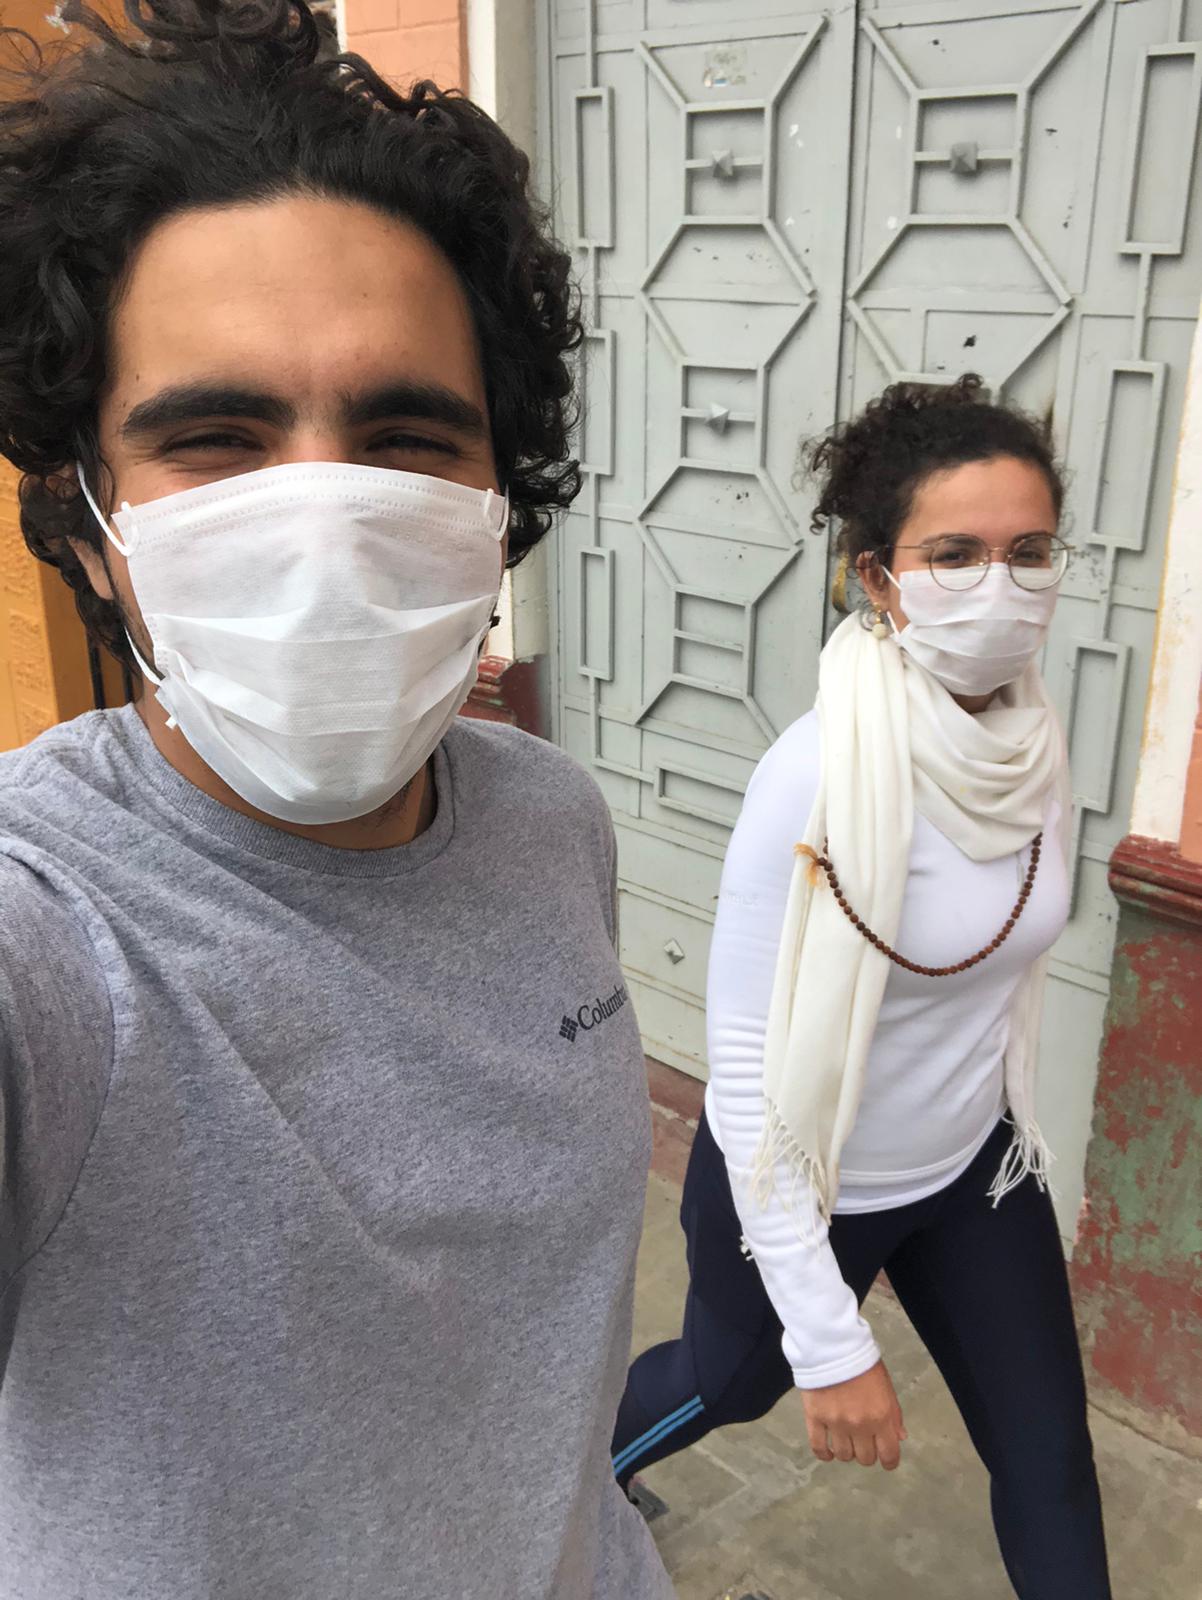 "É viver uma incerteza cruel", confessa casal que está preso em Huraz, no Peru